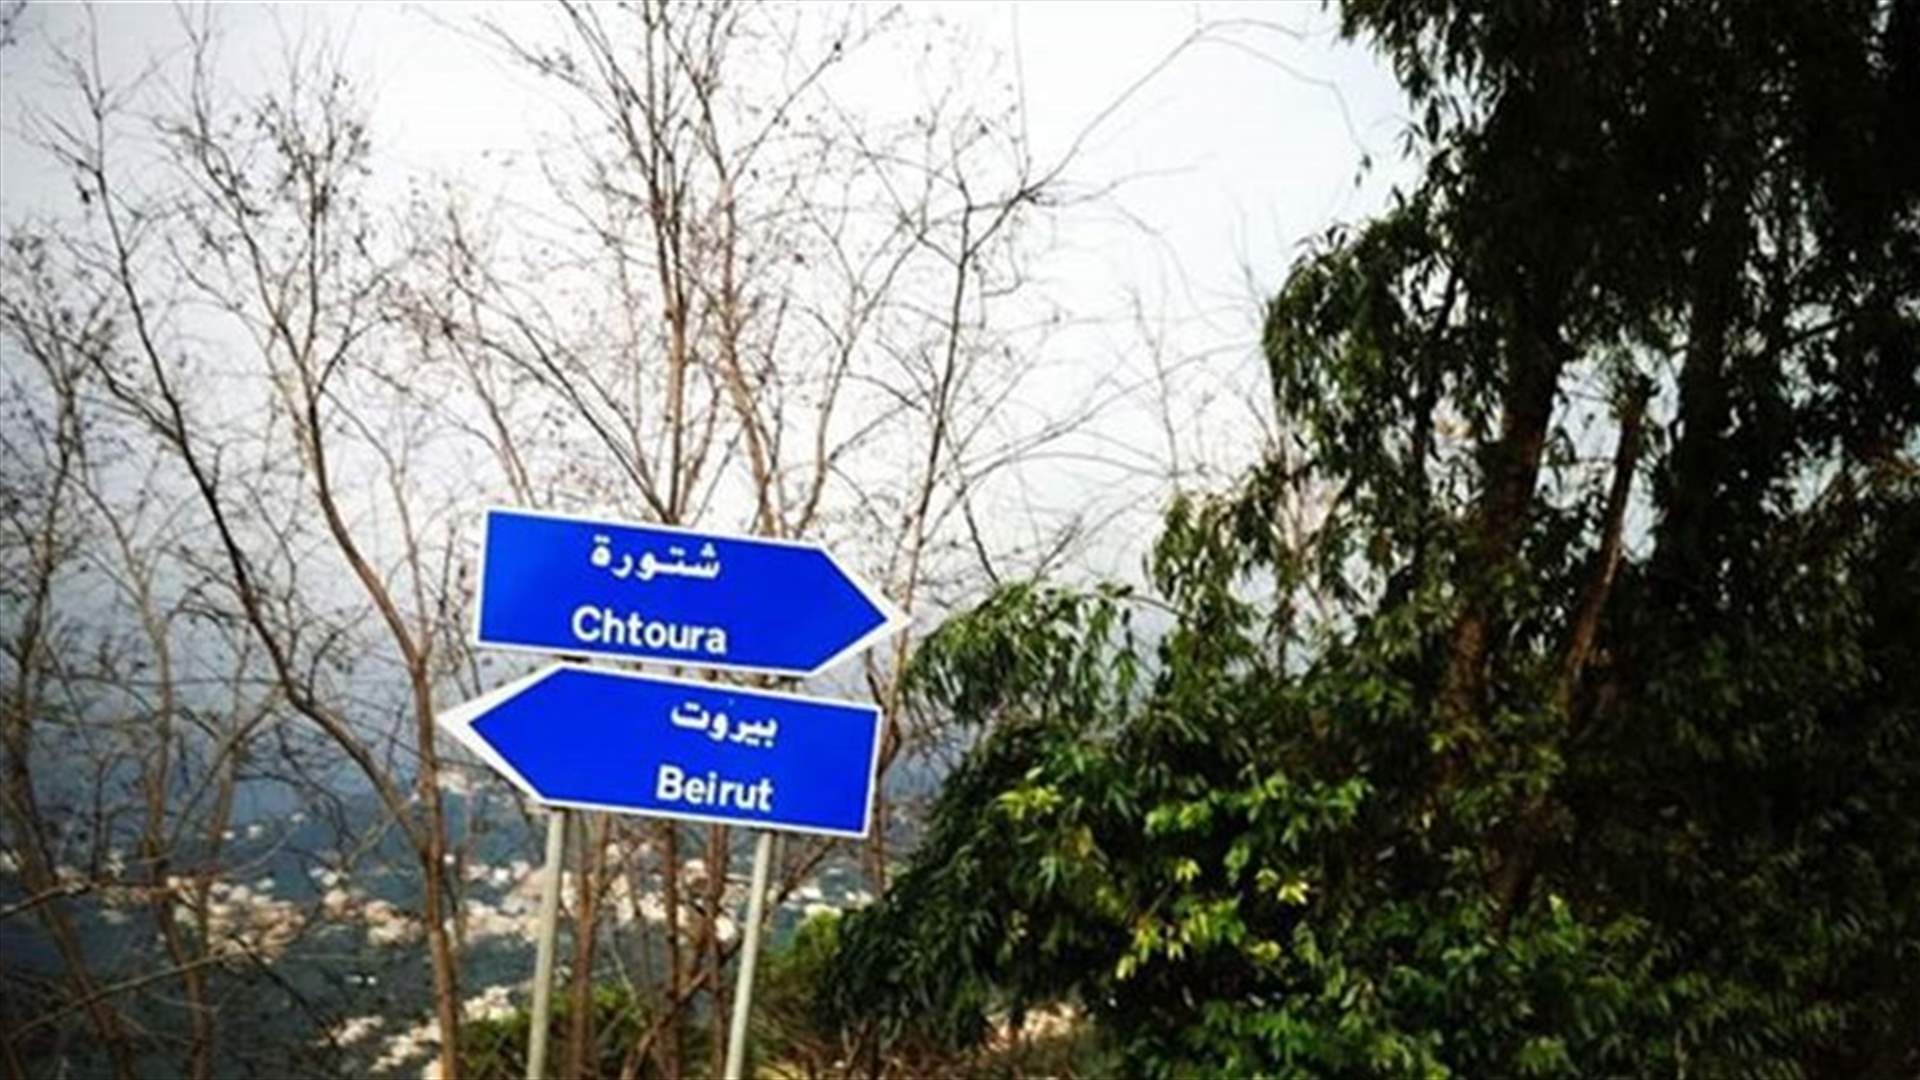 بعد فقدانه منذ أيام على طريق شتورة - عاليه... قريب زوجة الأسد يعود الى منزله